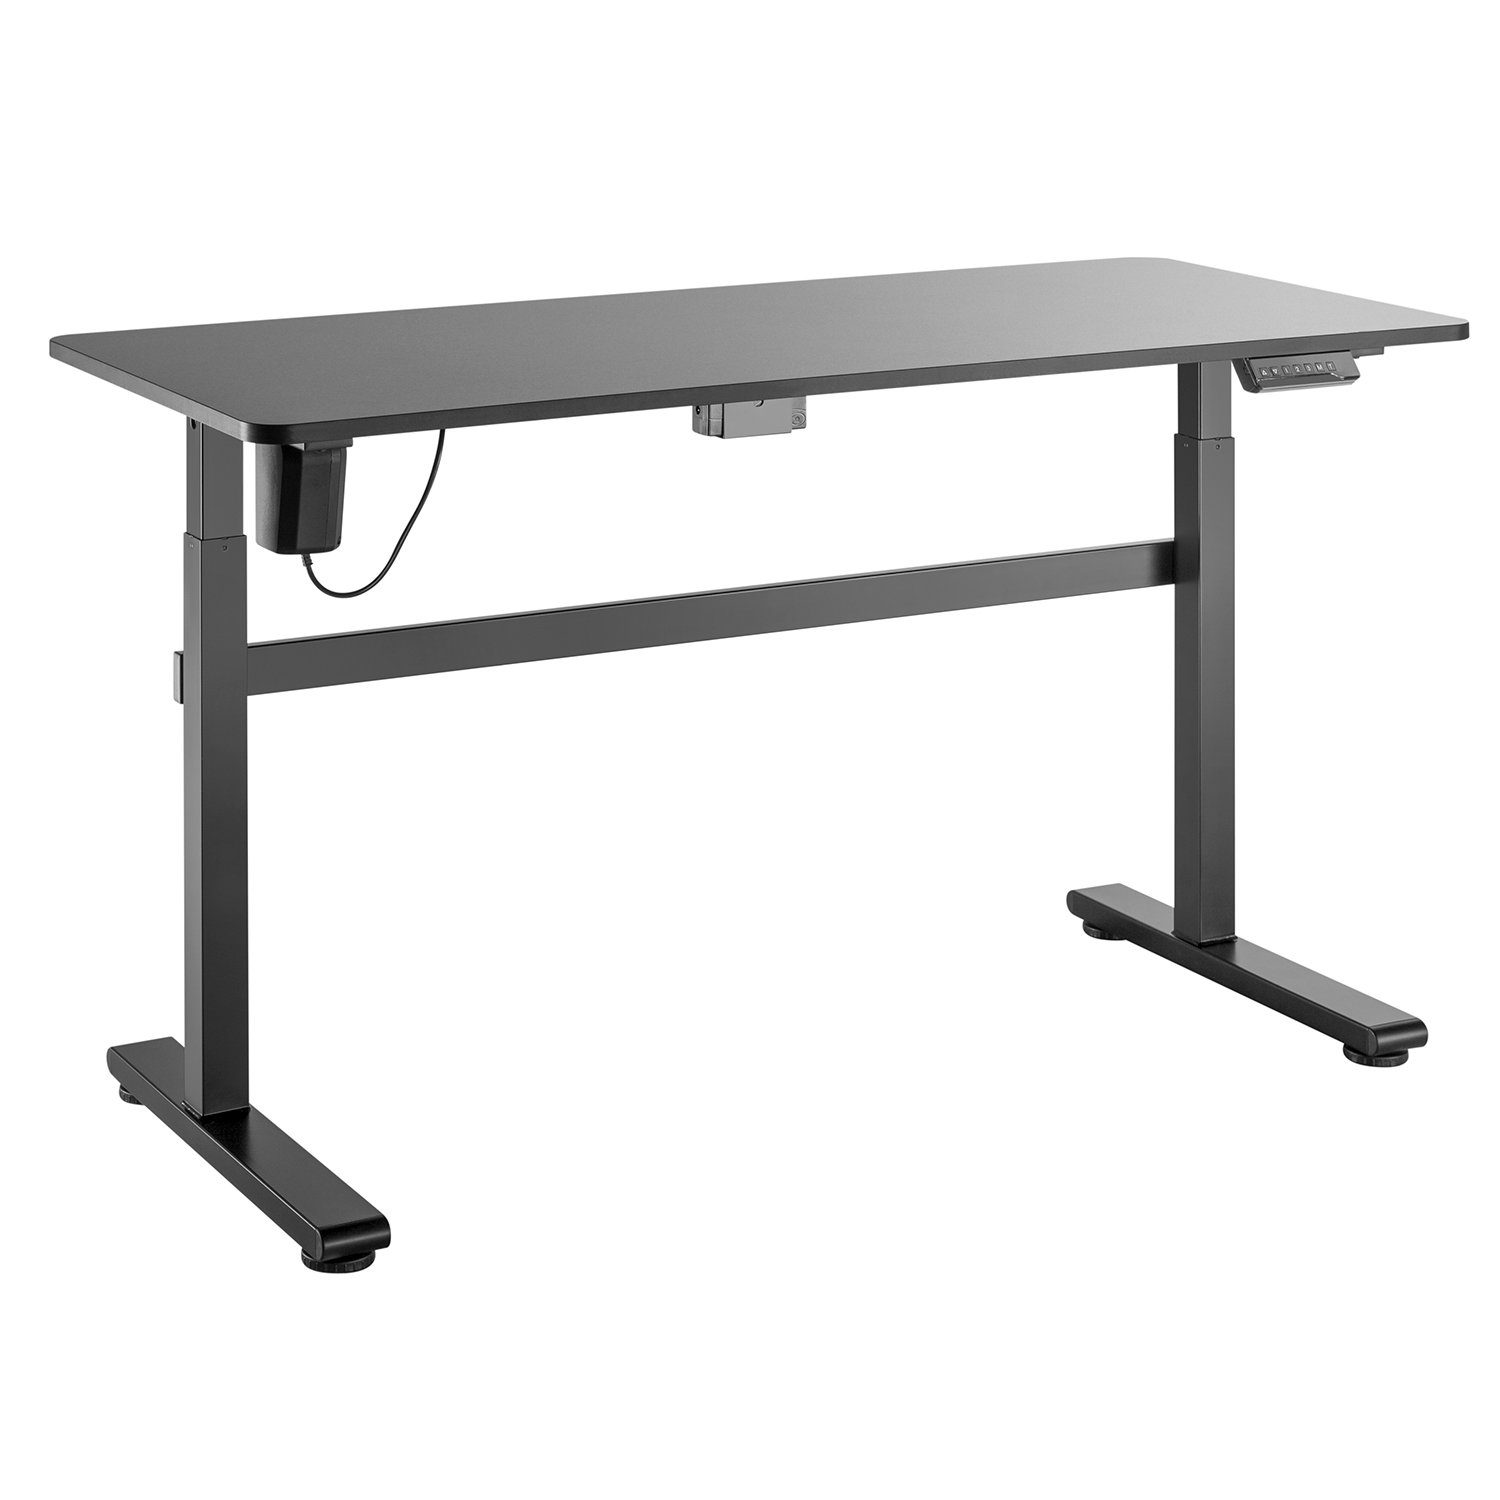 Ergo Office Schreibtisch ER-434, Elektrisch Höhenverstellbare Sitz-Steh- Schreibtisch 140x60cm max. 118cm Ergonomischer Tisch Belastbar bis 50kg